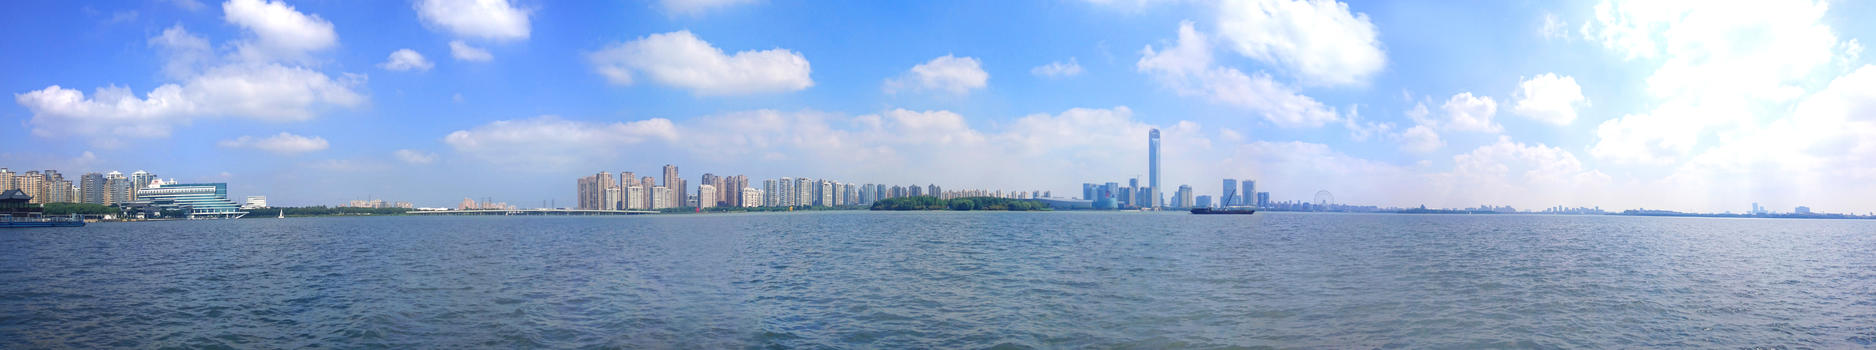 环金鸡湖湖景图片素材免费下载